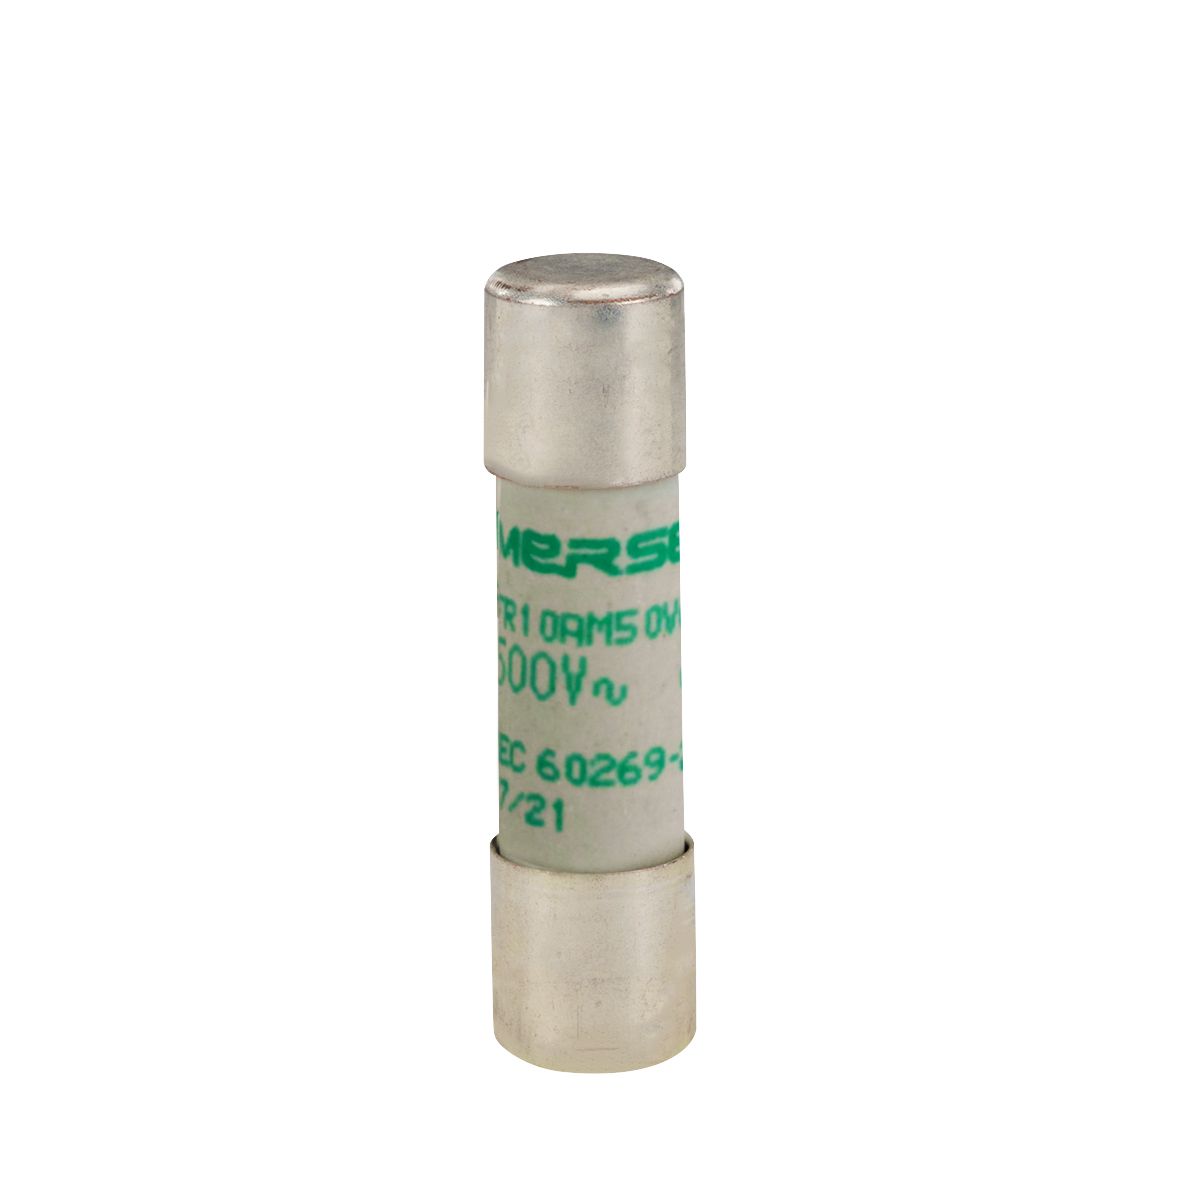 W219232 - Cylindrical fuse-link aM 500VAC 10.3x38, 4A